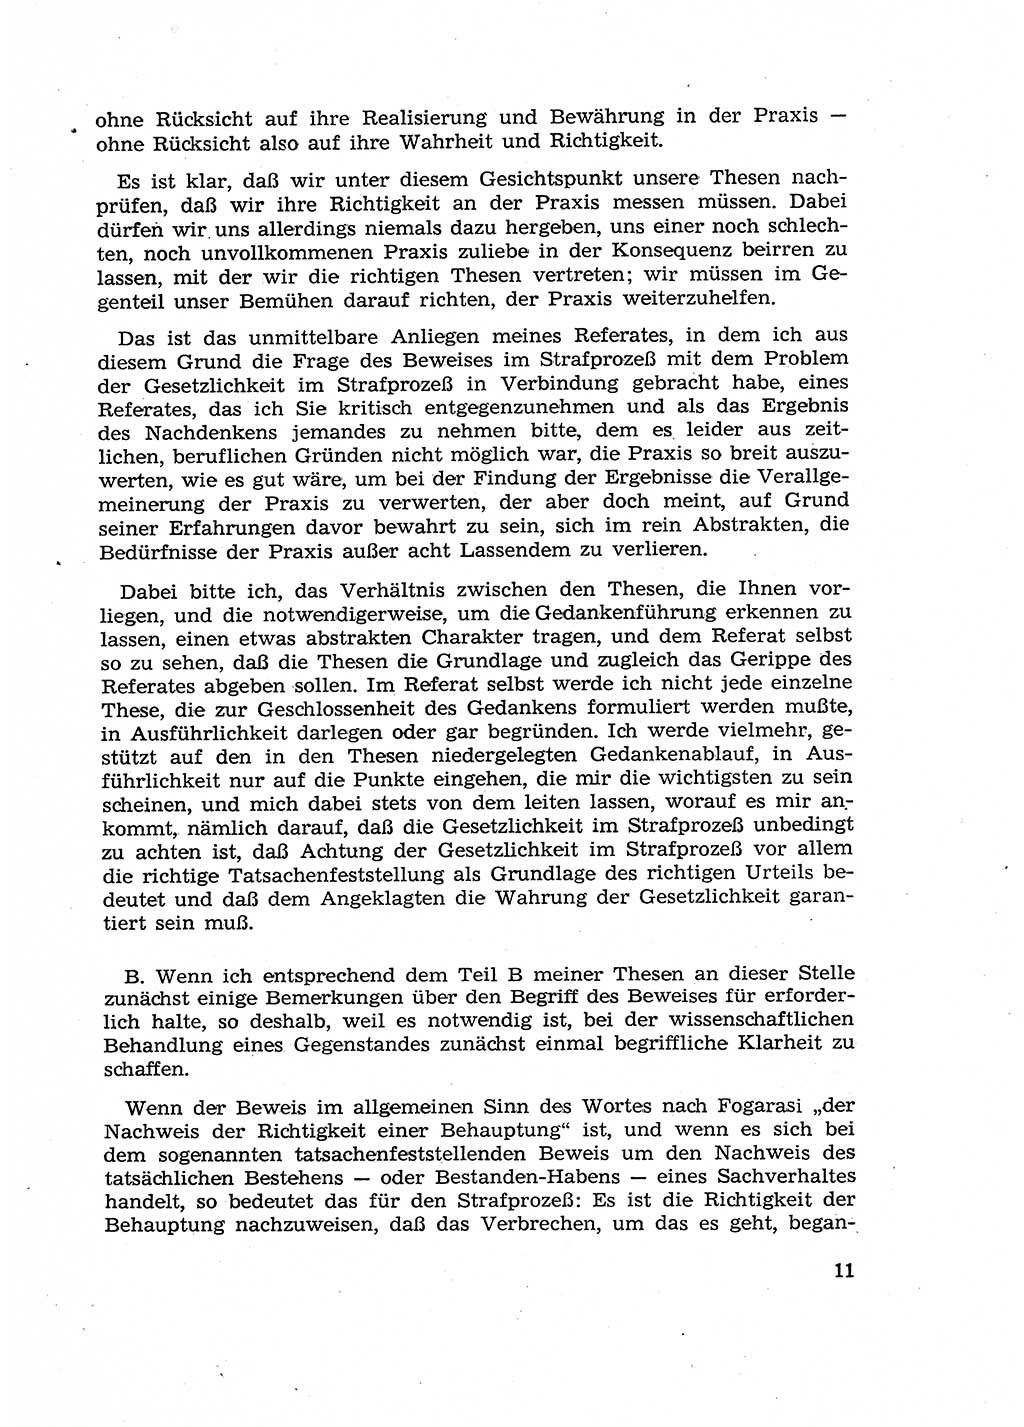 Fragen des Beweisrechts im Strafprozess [Deutsche Demokratische Republik (DDR)] 1956, Seite 11 (Fr. BeweisR. Str.-Proz. DDR 1956, S. 11)